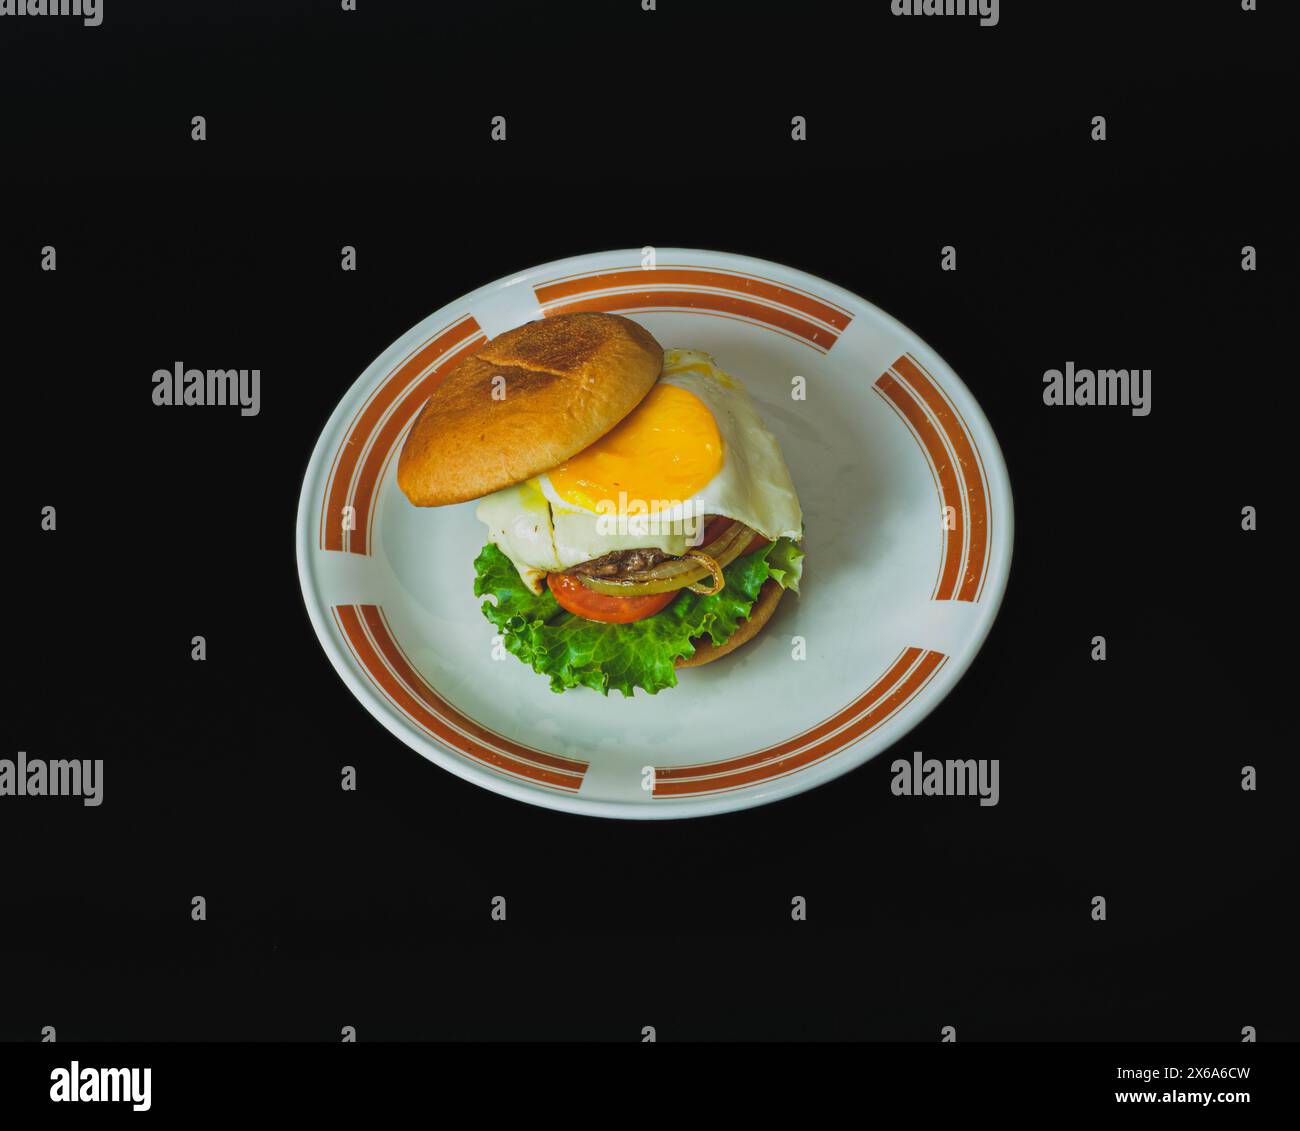 Una succosa polpetta di hamburger fatta in casa condita da un uovo fritto con un lato soleggiato. L'hamburger è su un piatto bianco. Foto Stock